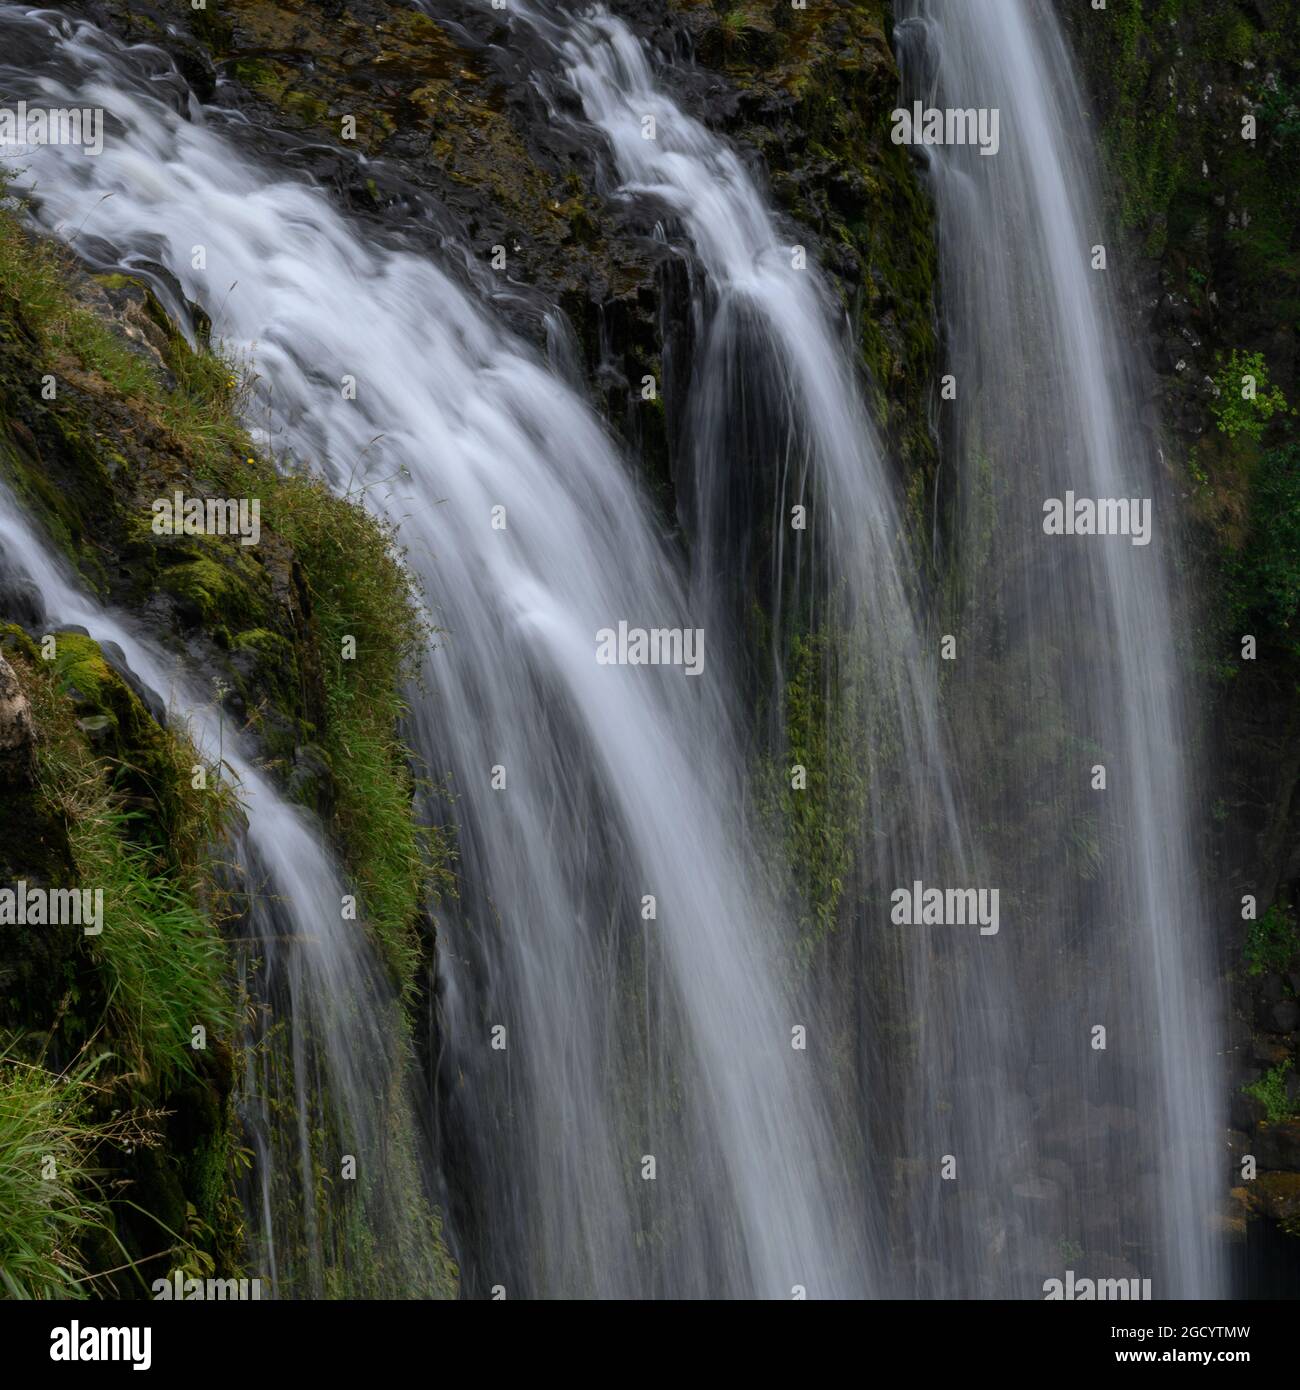 Scenic view of waterfall, Whangarei Falls, Tikipunga, Whangarei, Northland, North Island, New Zealand Stock Photo